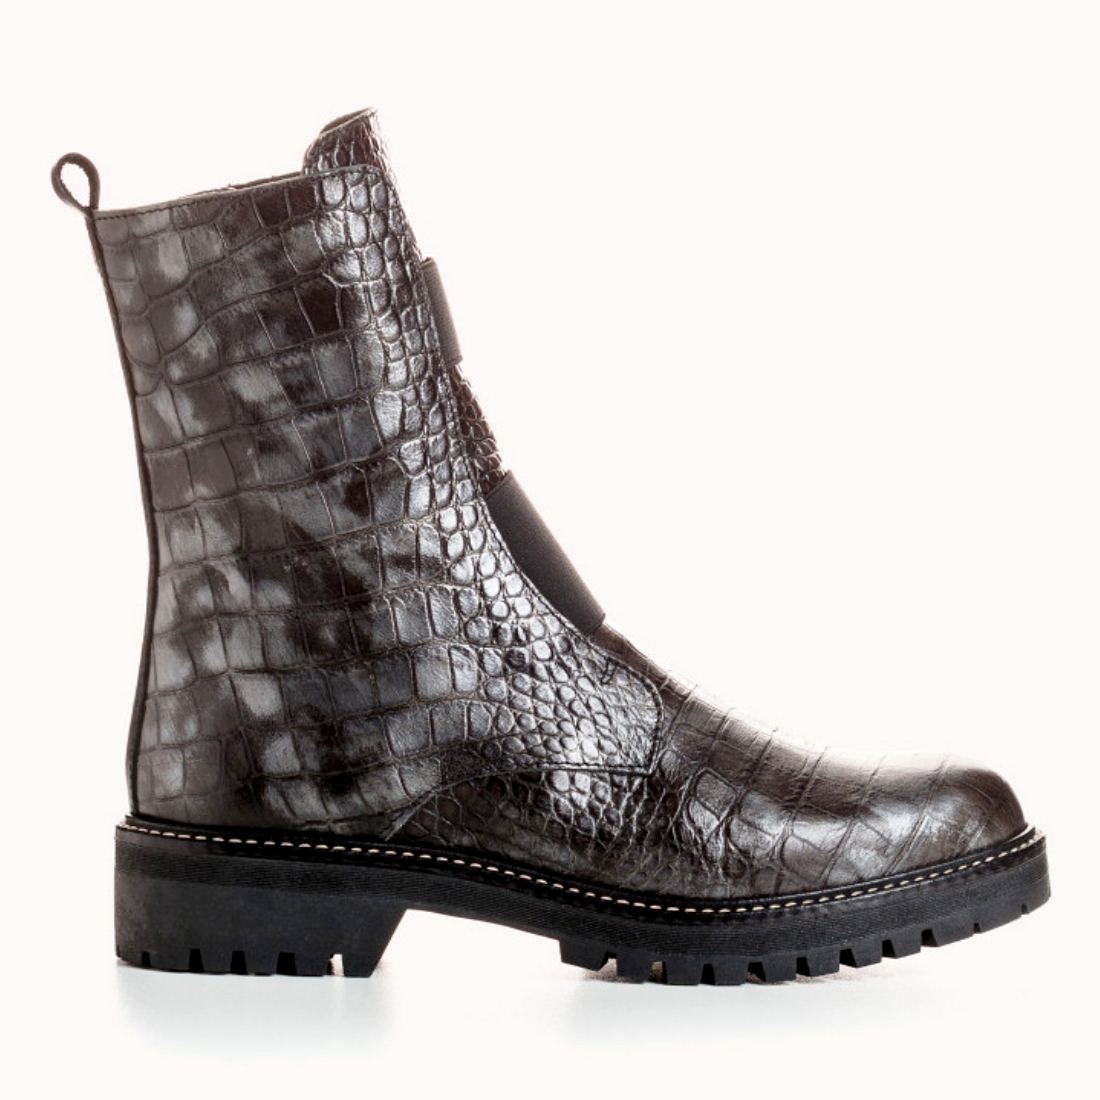 Boots Montantes Femme Gris de REQINS modèle Dusky-Alligator